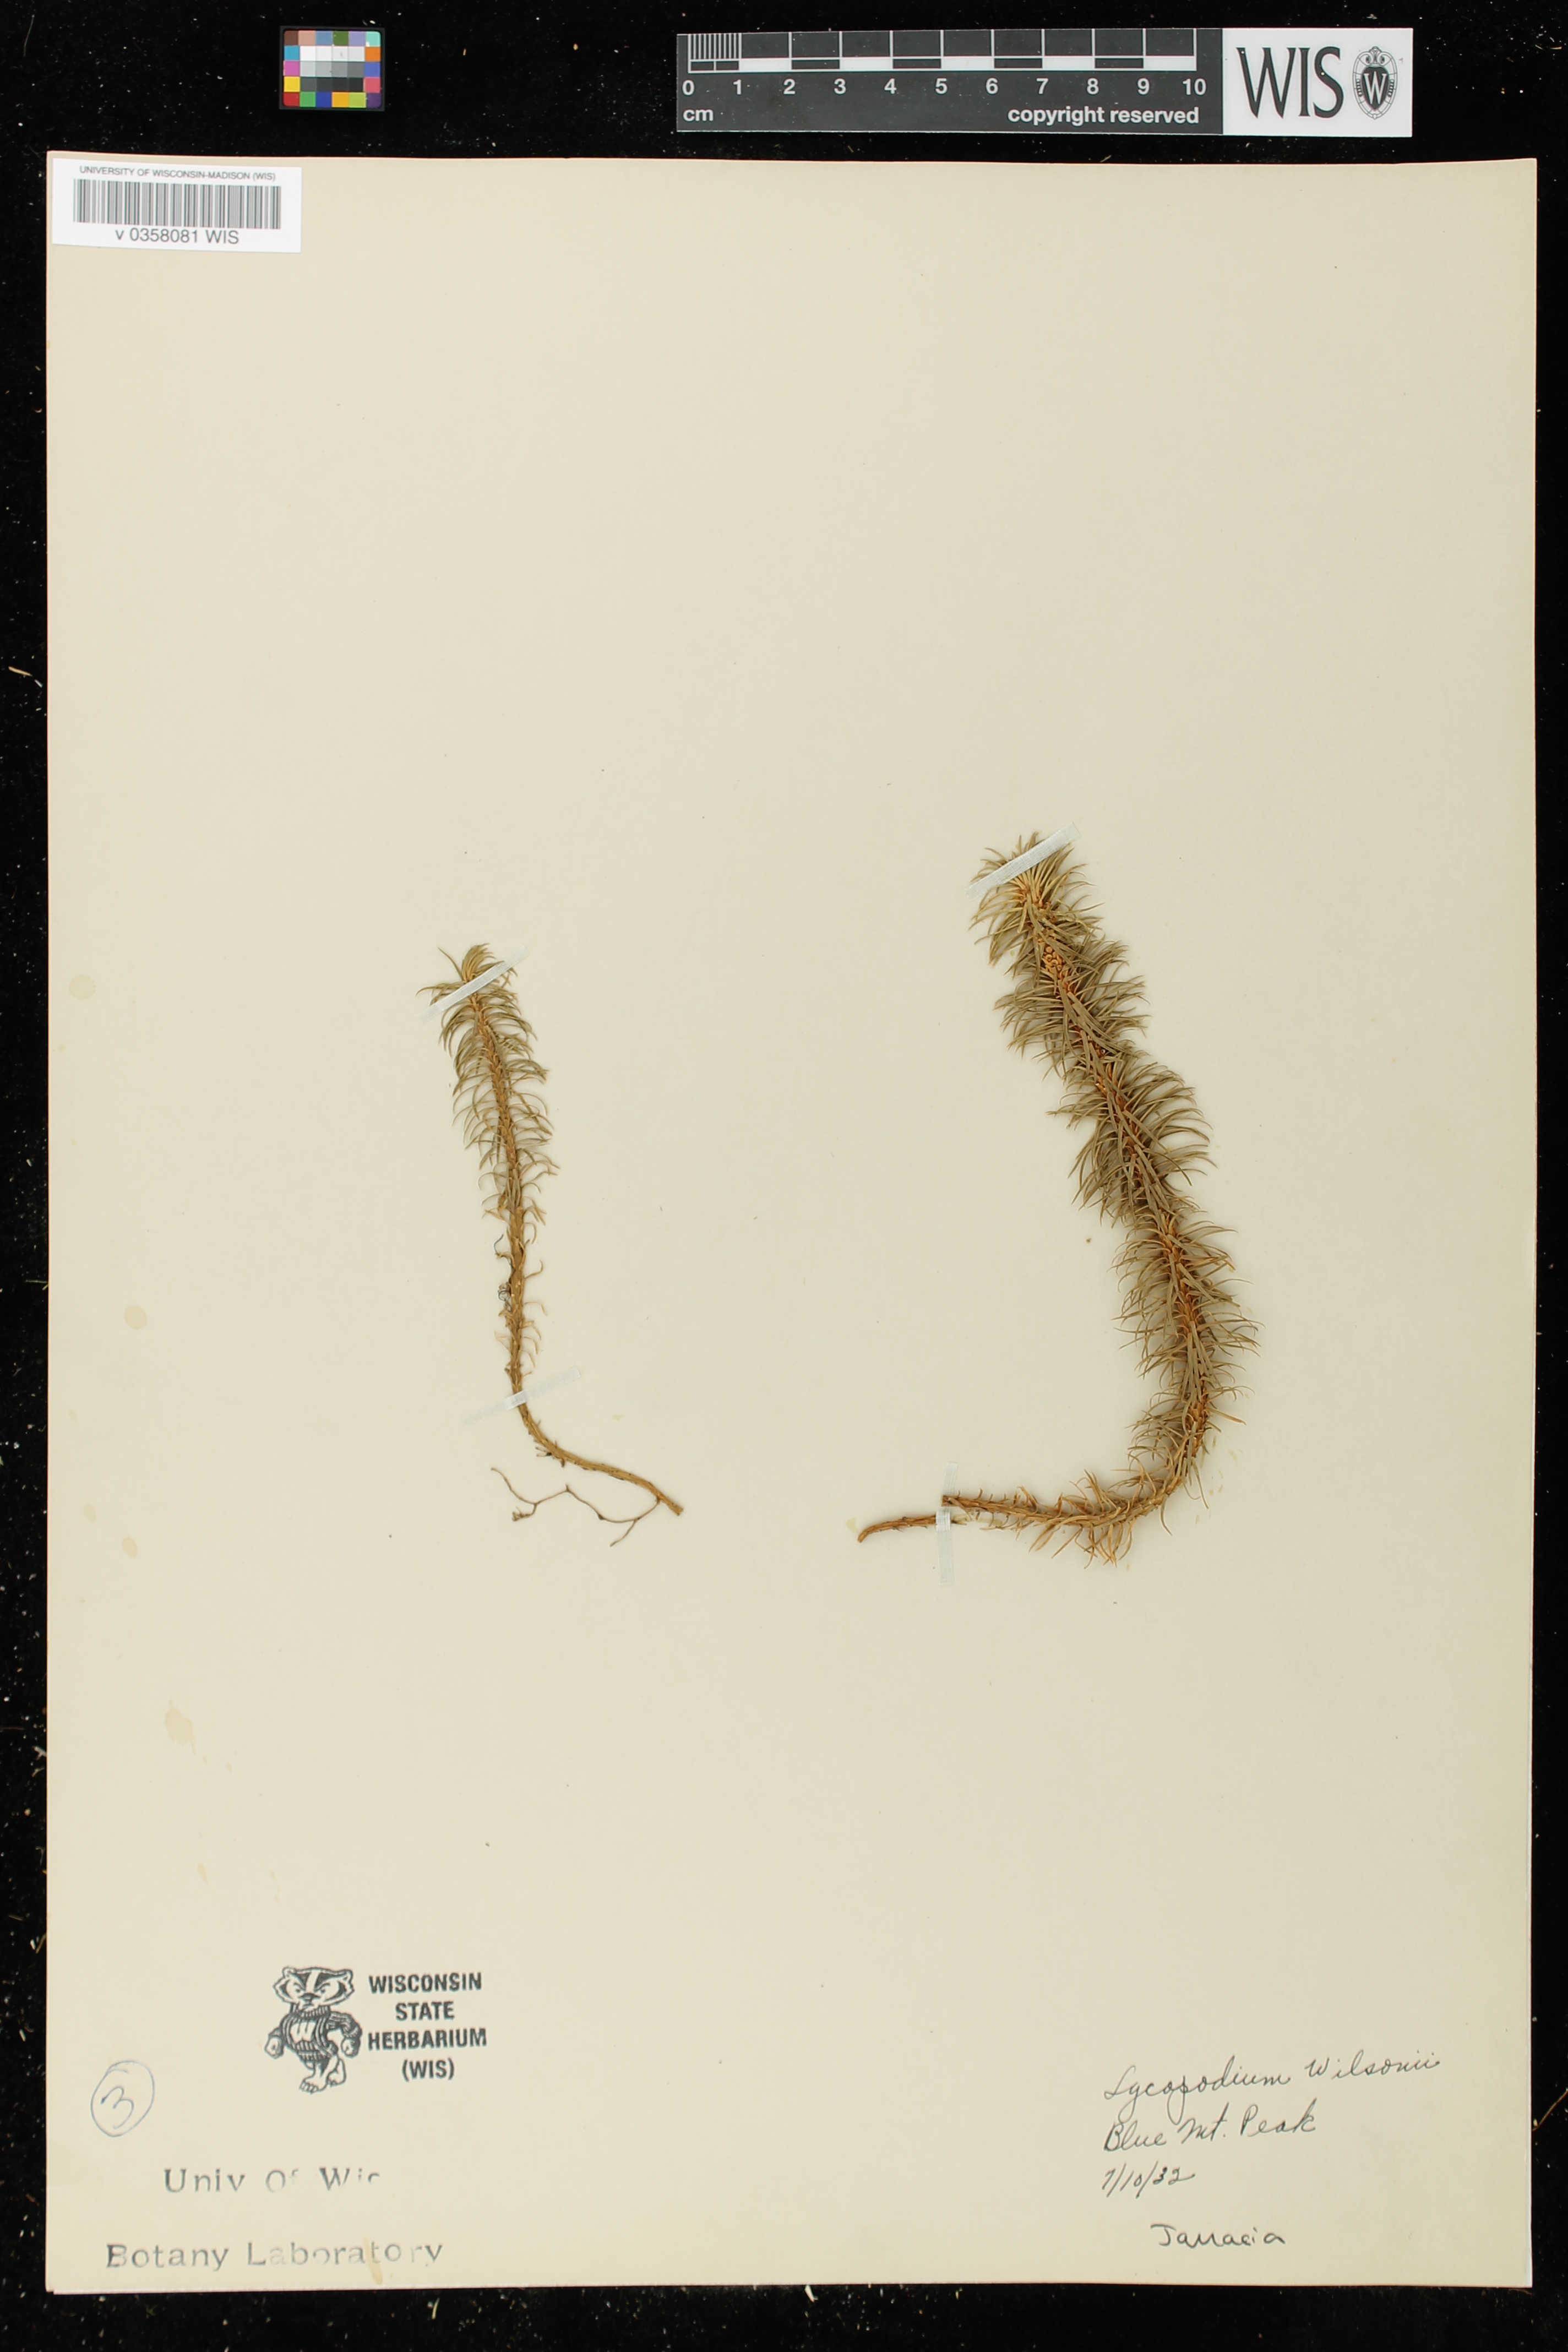 Lycopodium wilsonii image